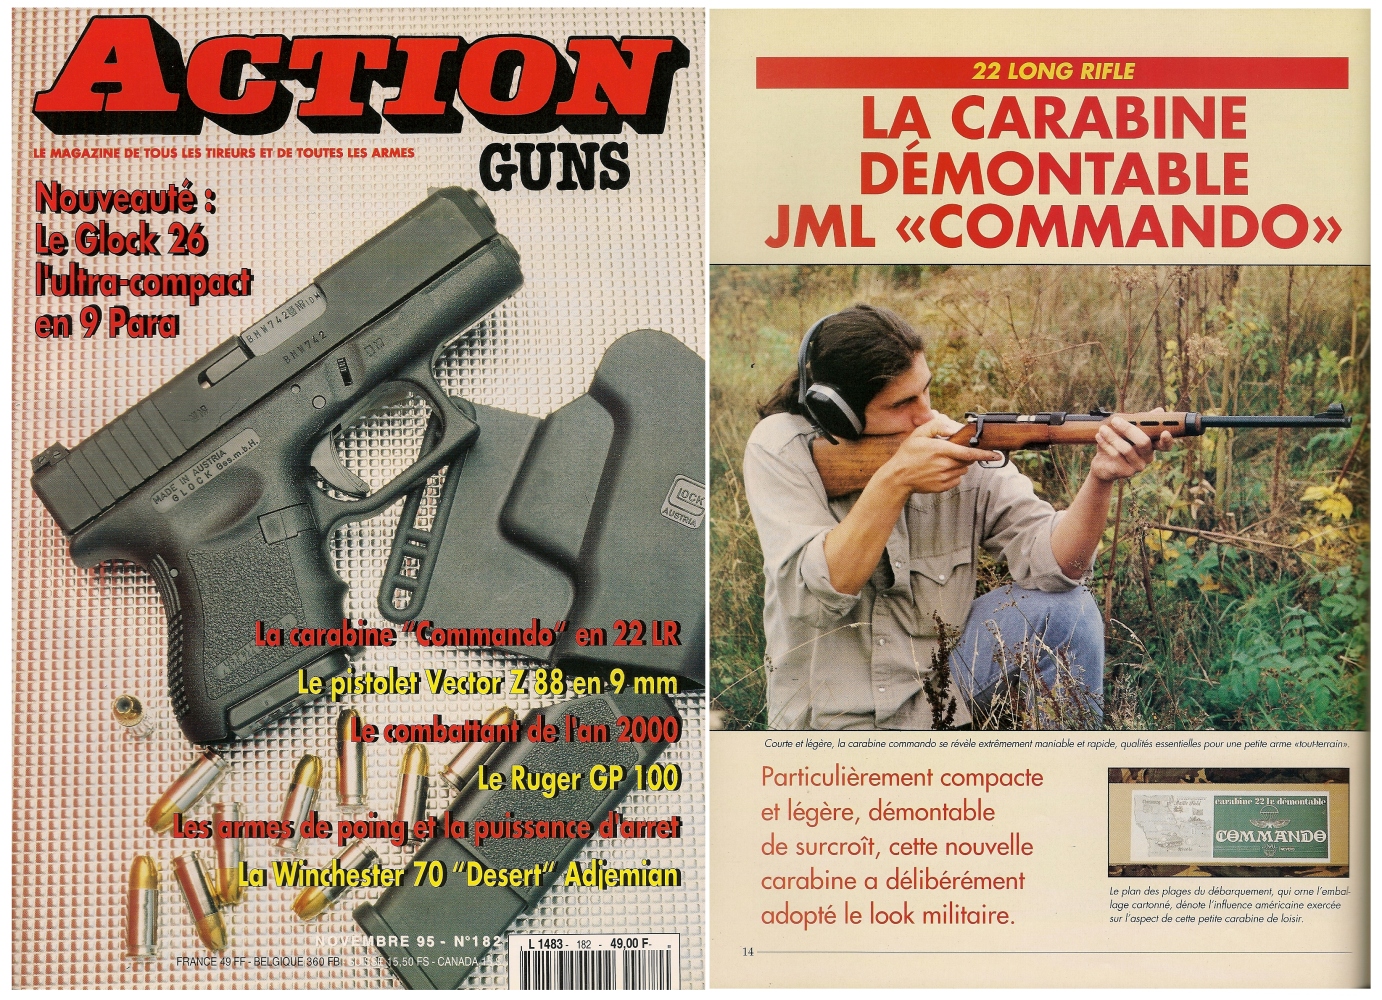 Le banc d’essai de la carabine JML Commando a été publié sur 5 pages dans le magazine Action Guns n°182 (novembre 1995).